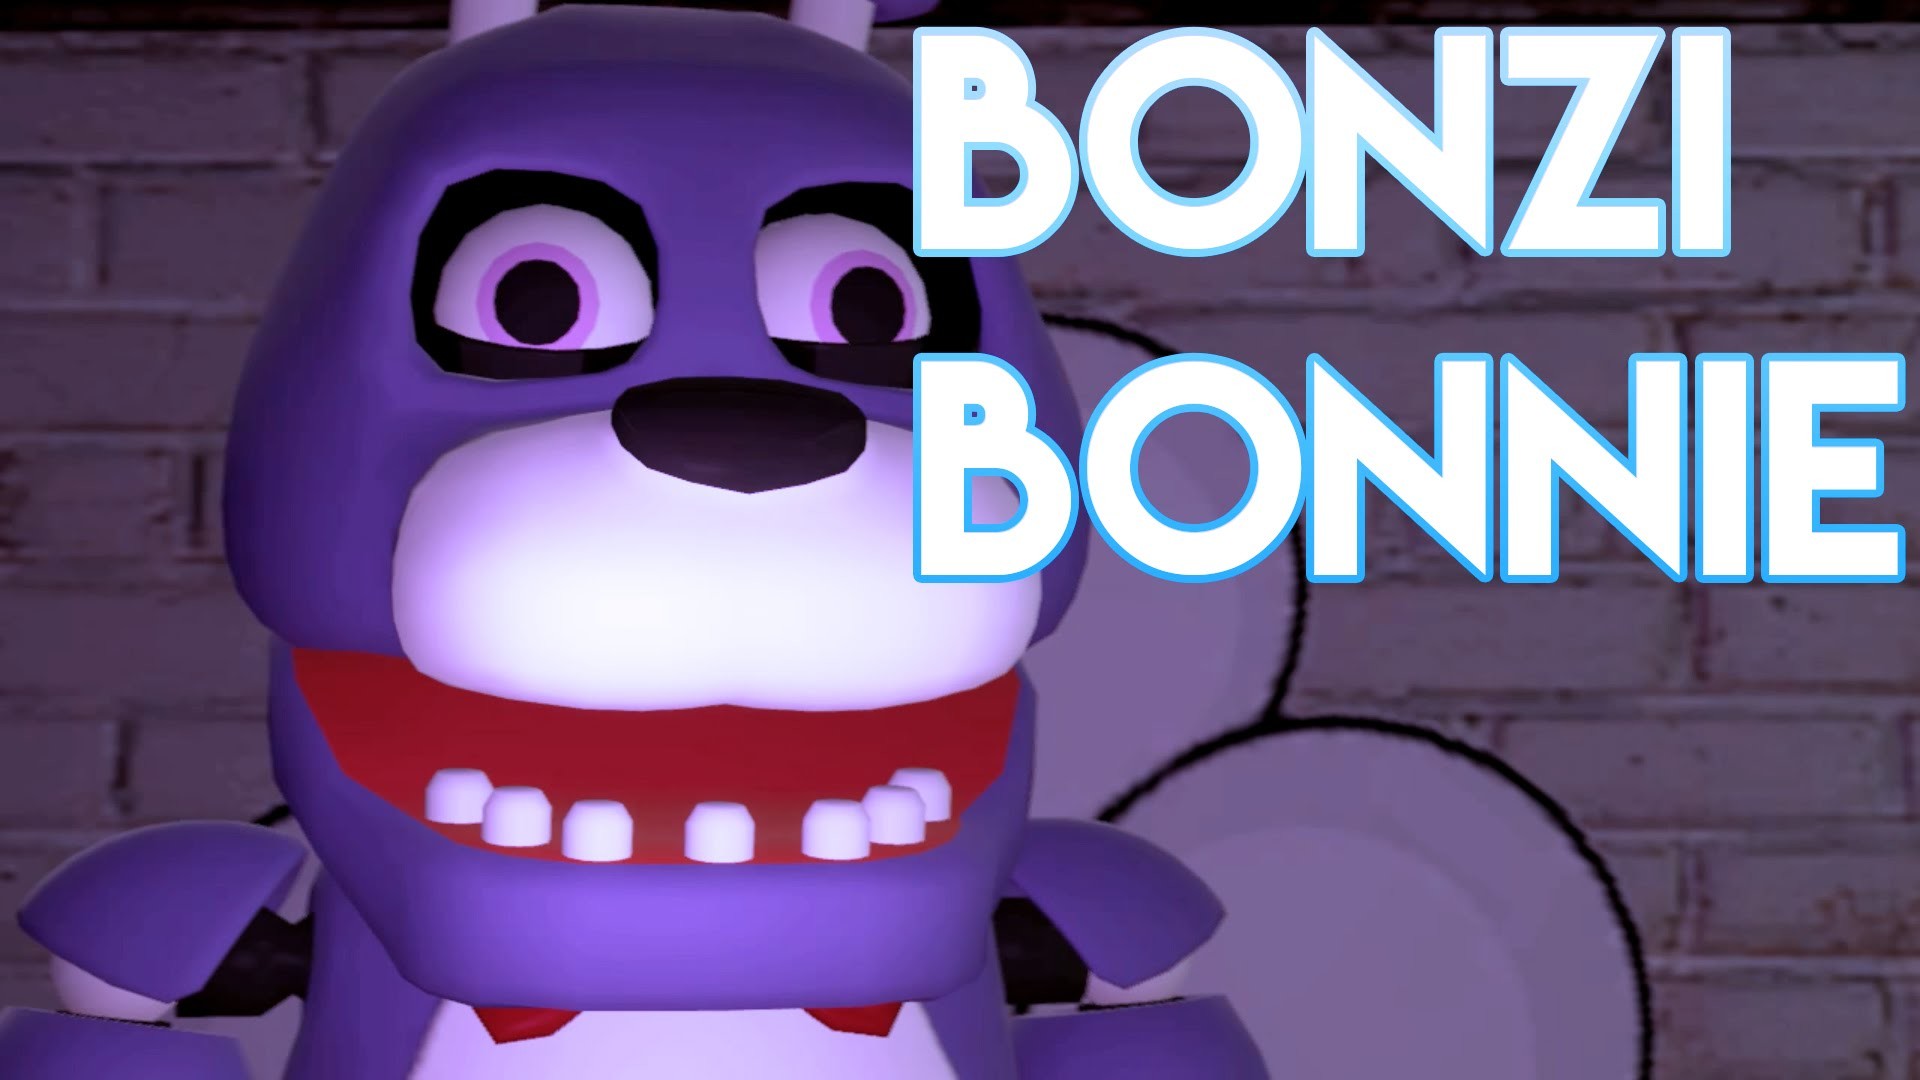 1920x1080 [FNAF SFM] Bonzi Bonnie - YouTube